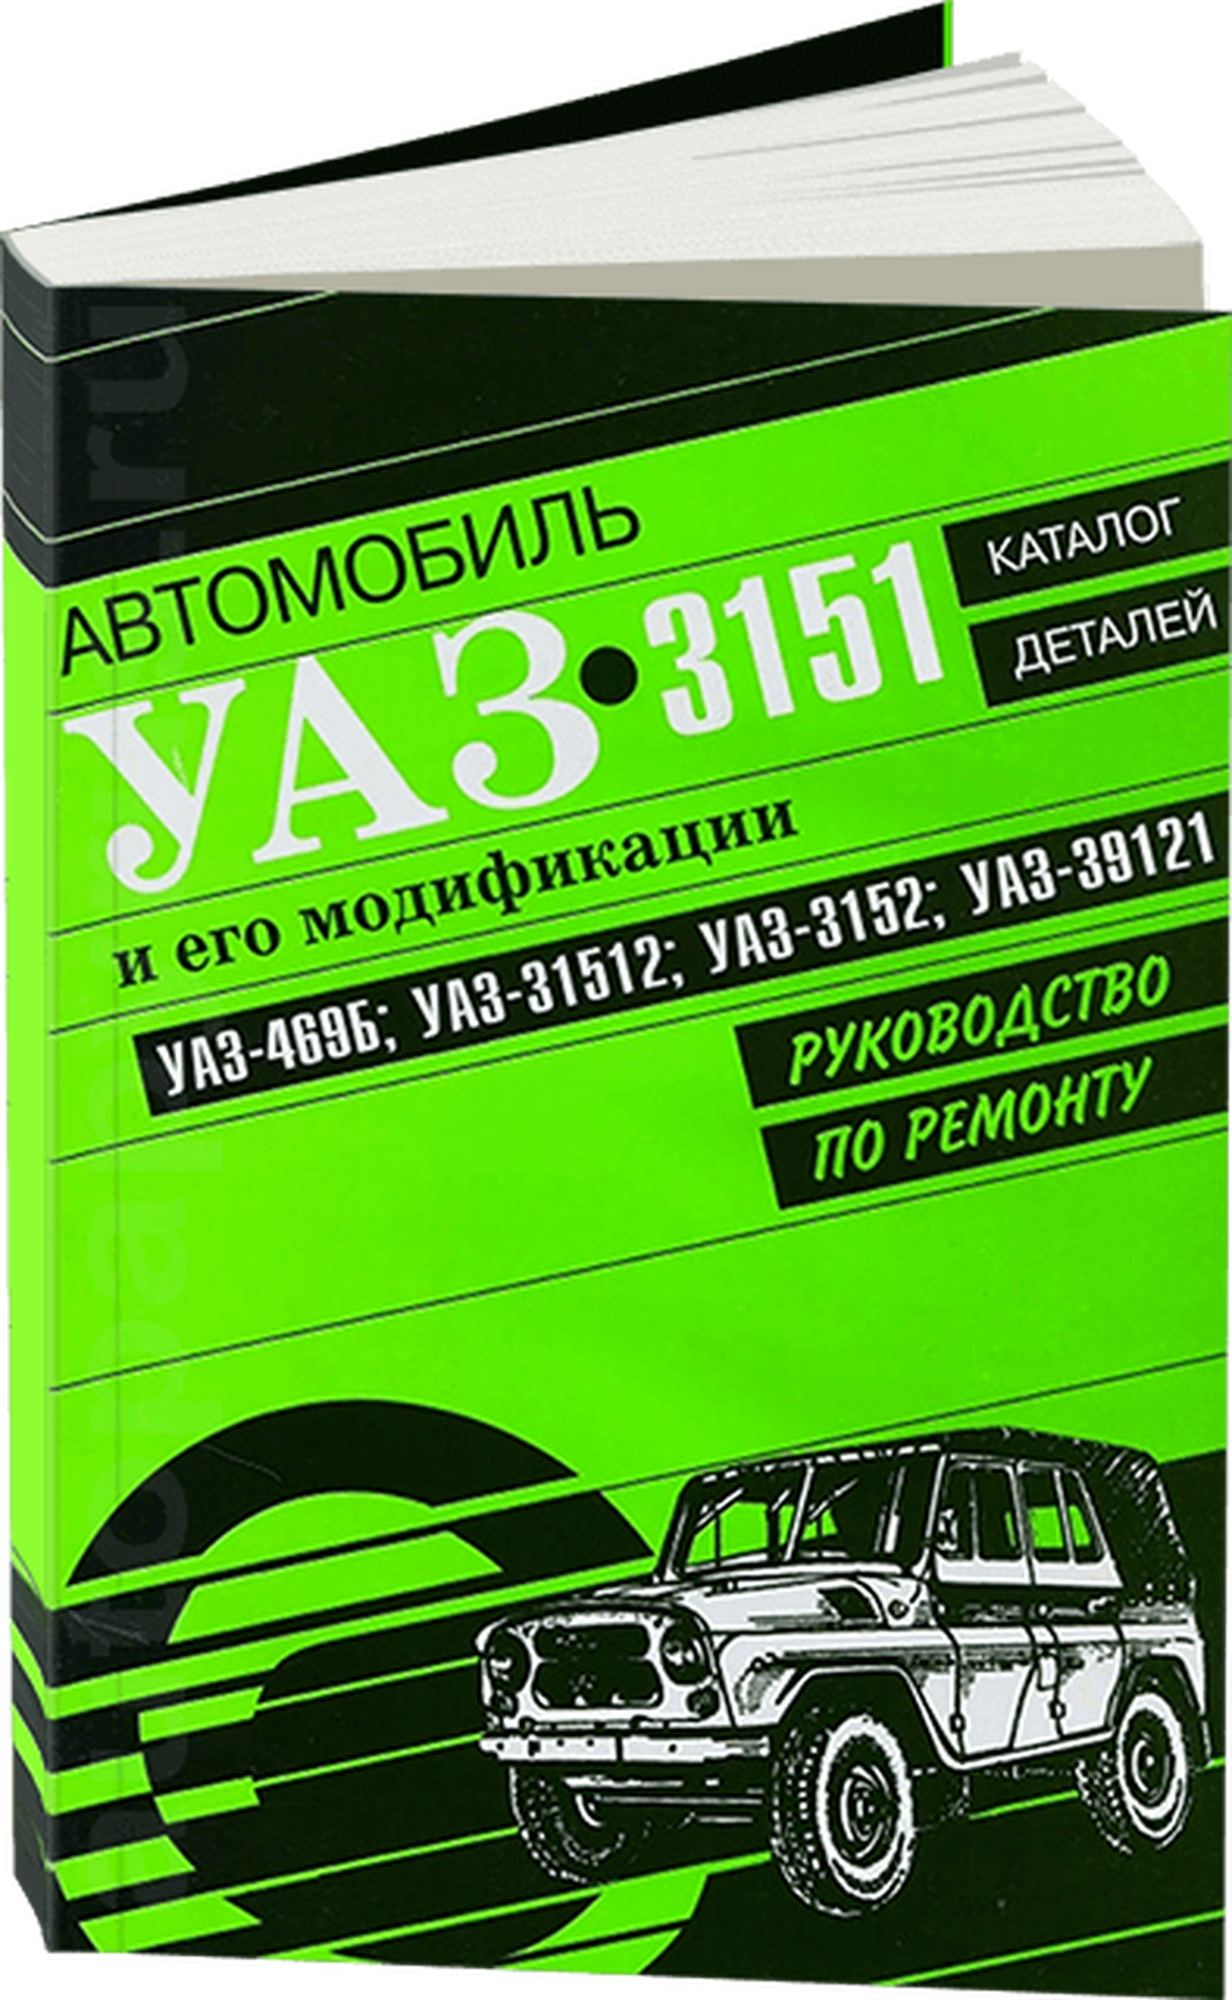 Руководство по ремонту и каталог деталей УАЗ (UAZ) 3151 и его модификаций, издательство Арго-Авто